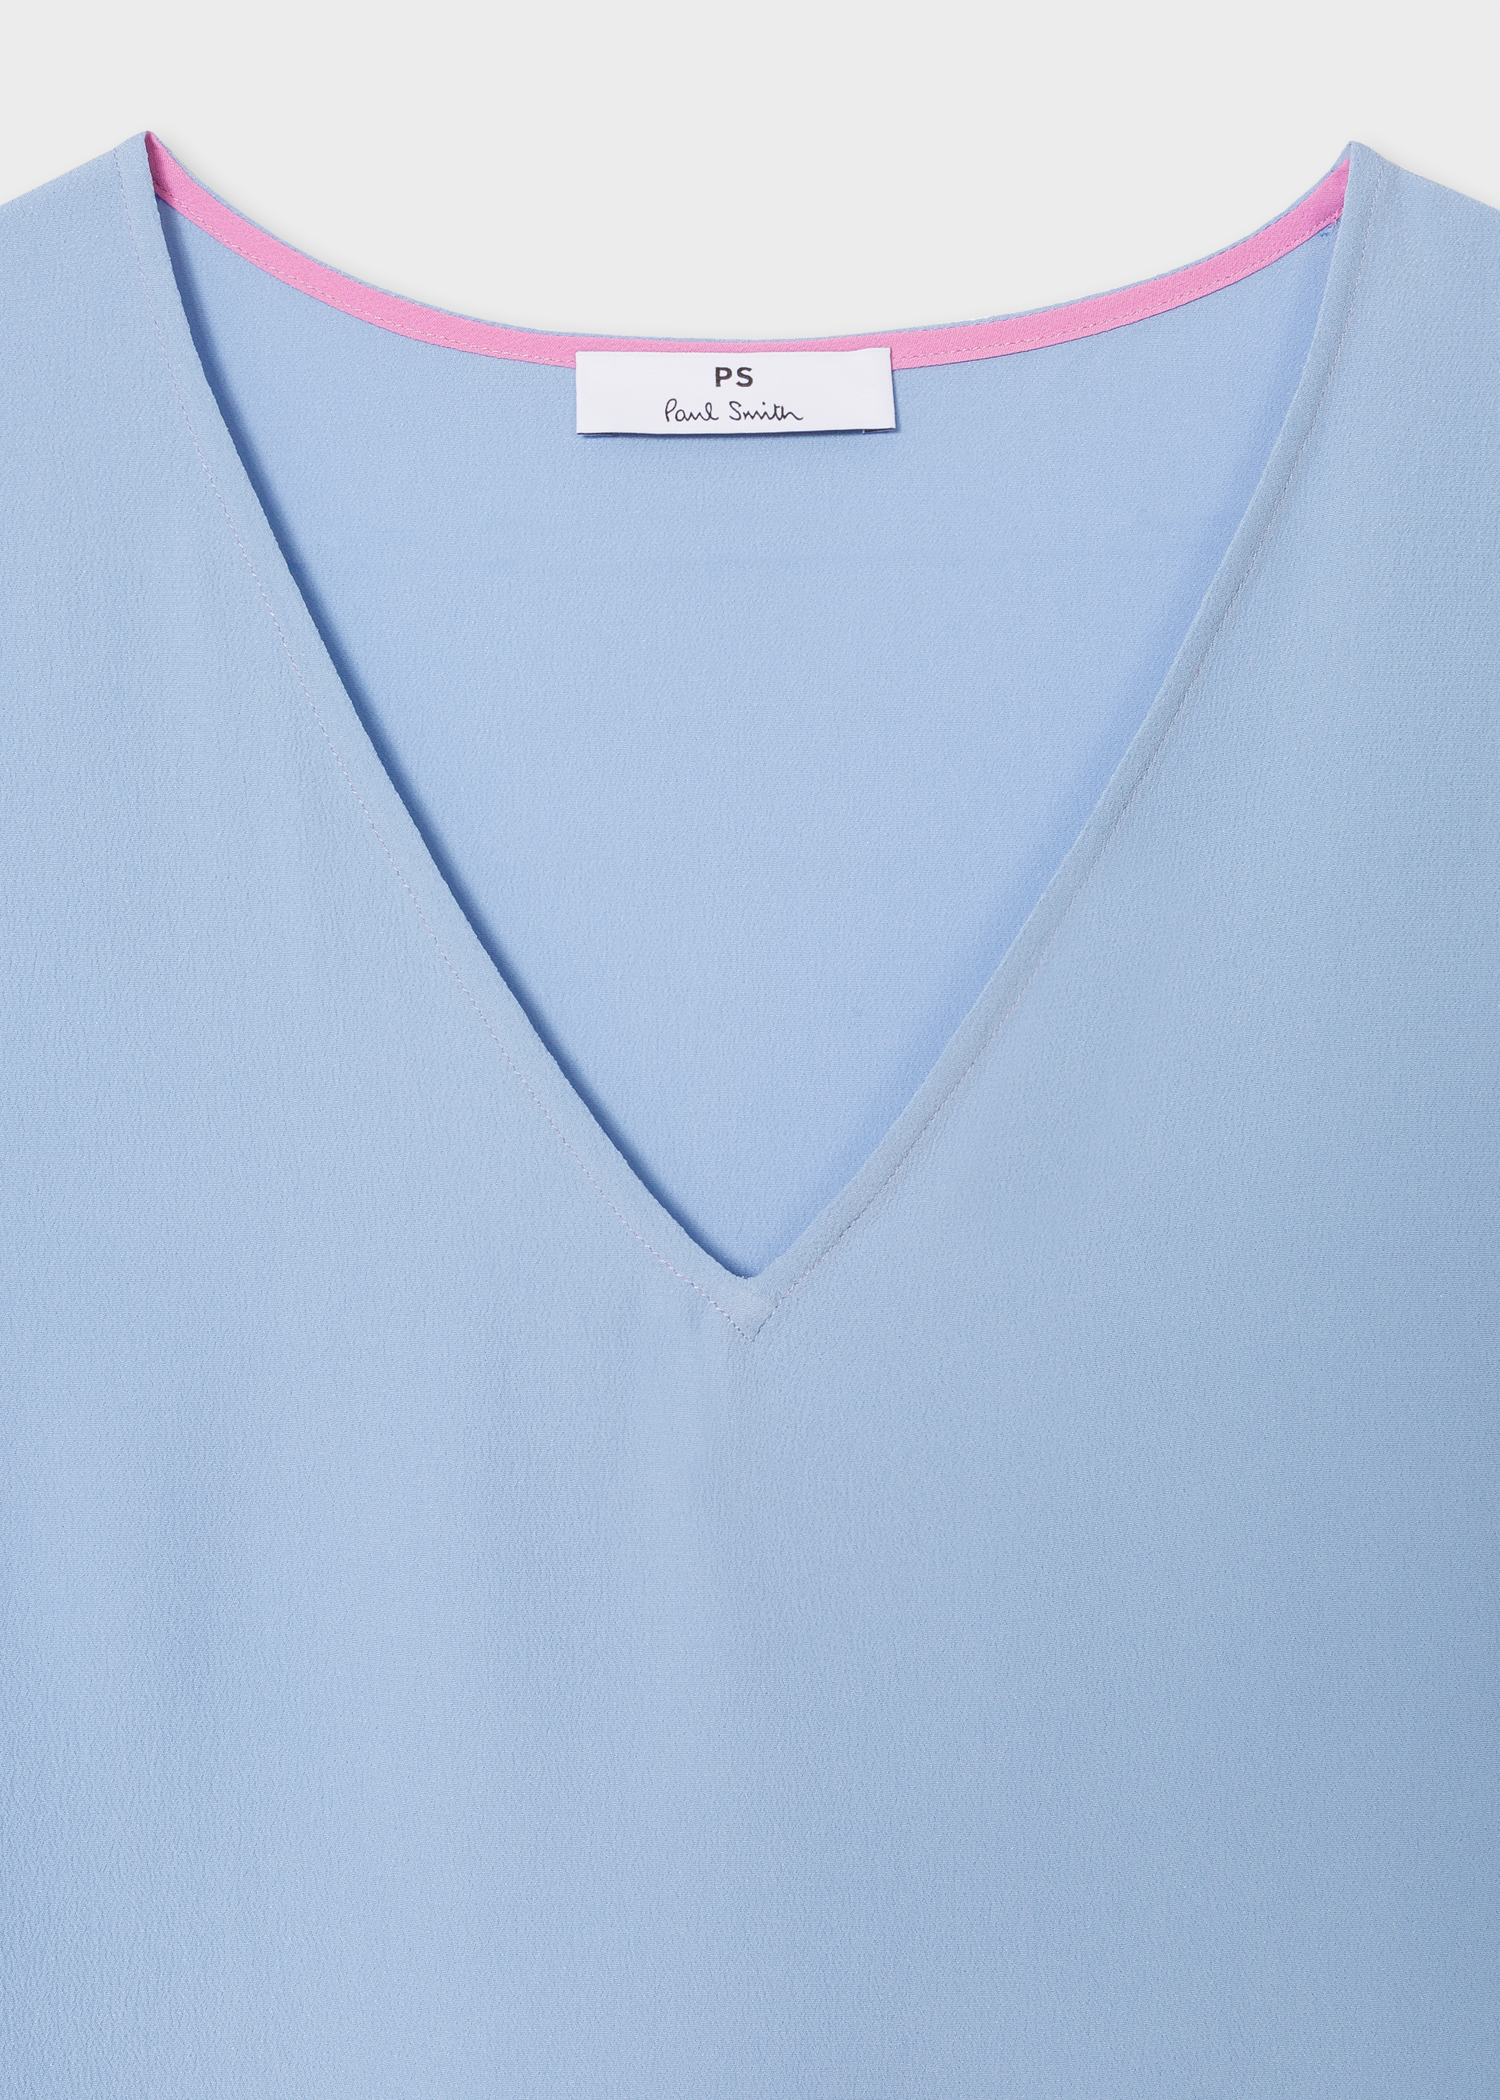 Collar View - Women's Light Blue V-Neck Silk-Blend T-Shirt Paul Smith